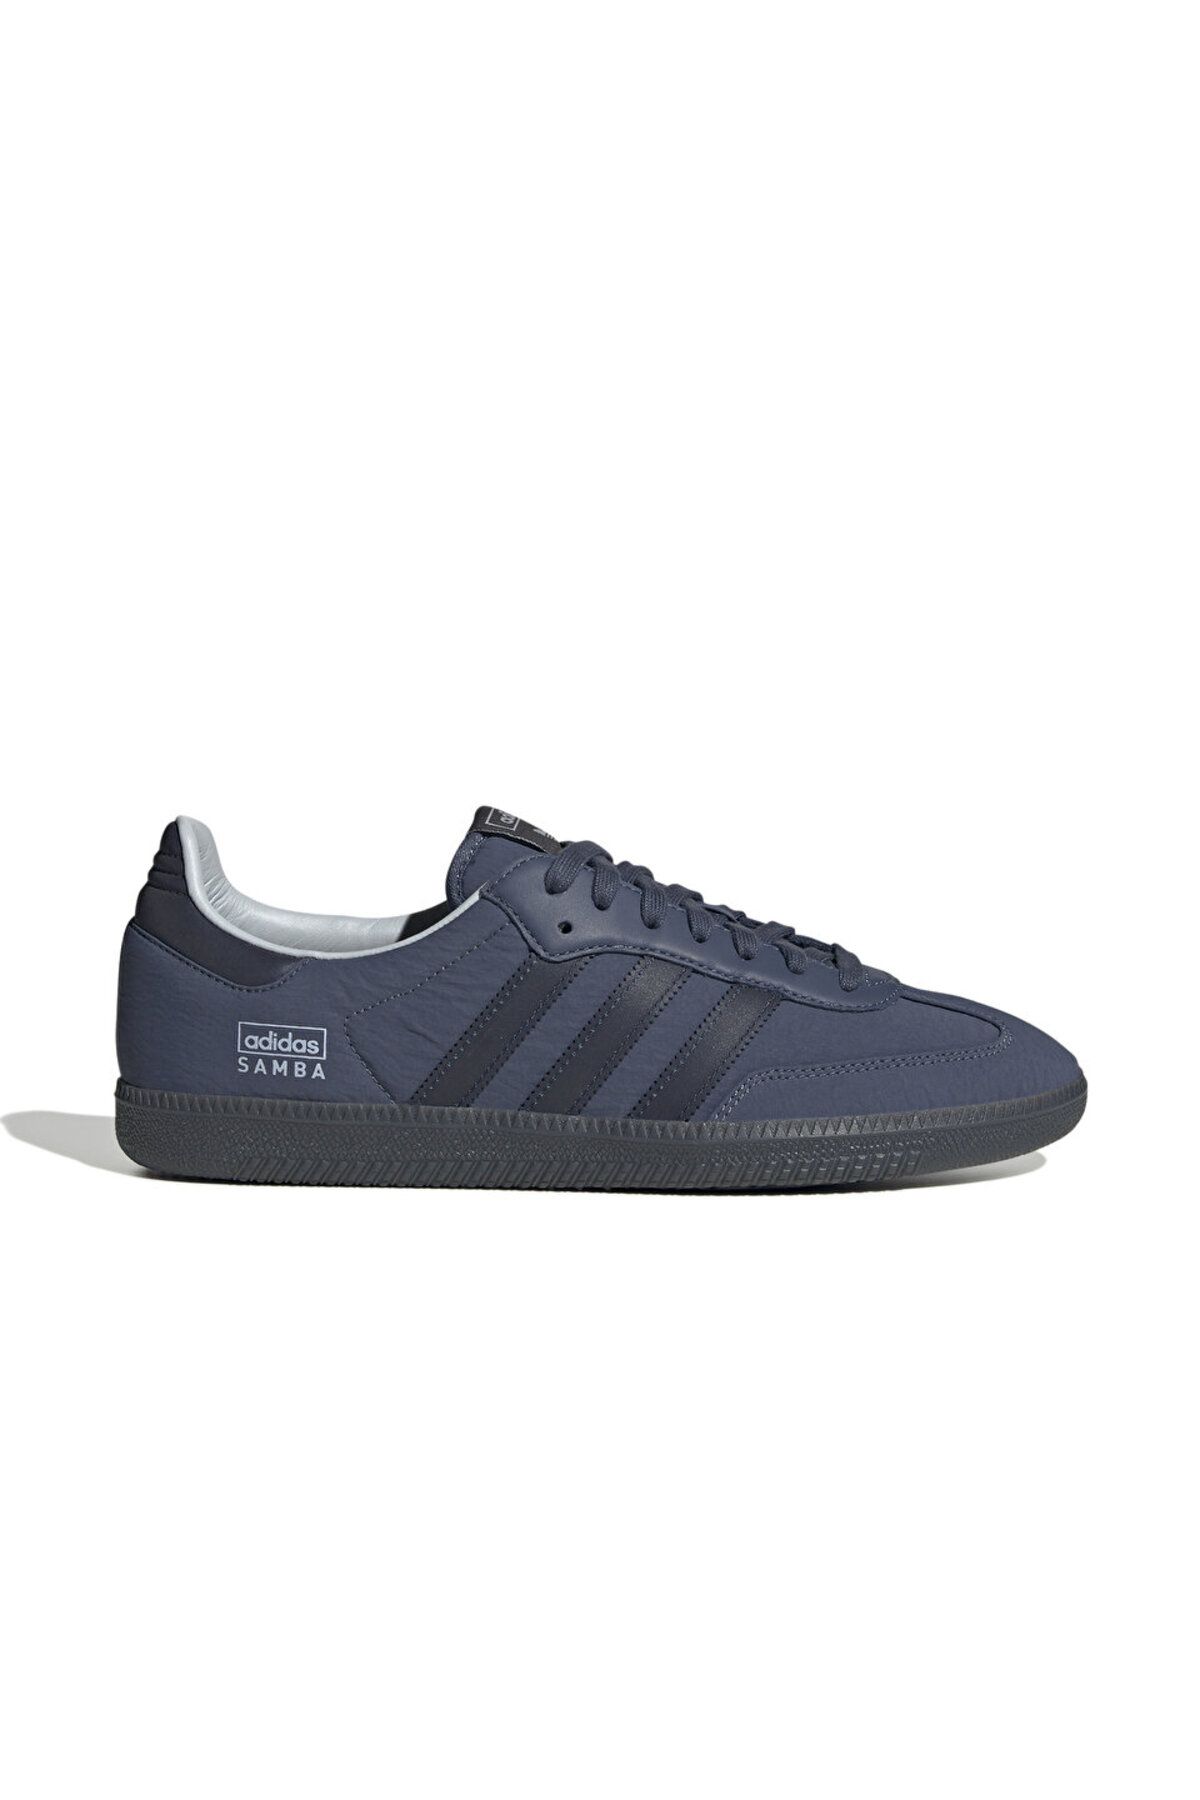 adidas Samba Og Unisex Günlük Ayakkabı IG6169 Mavi